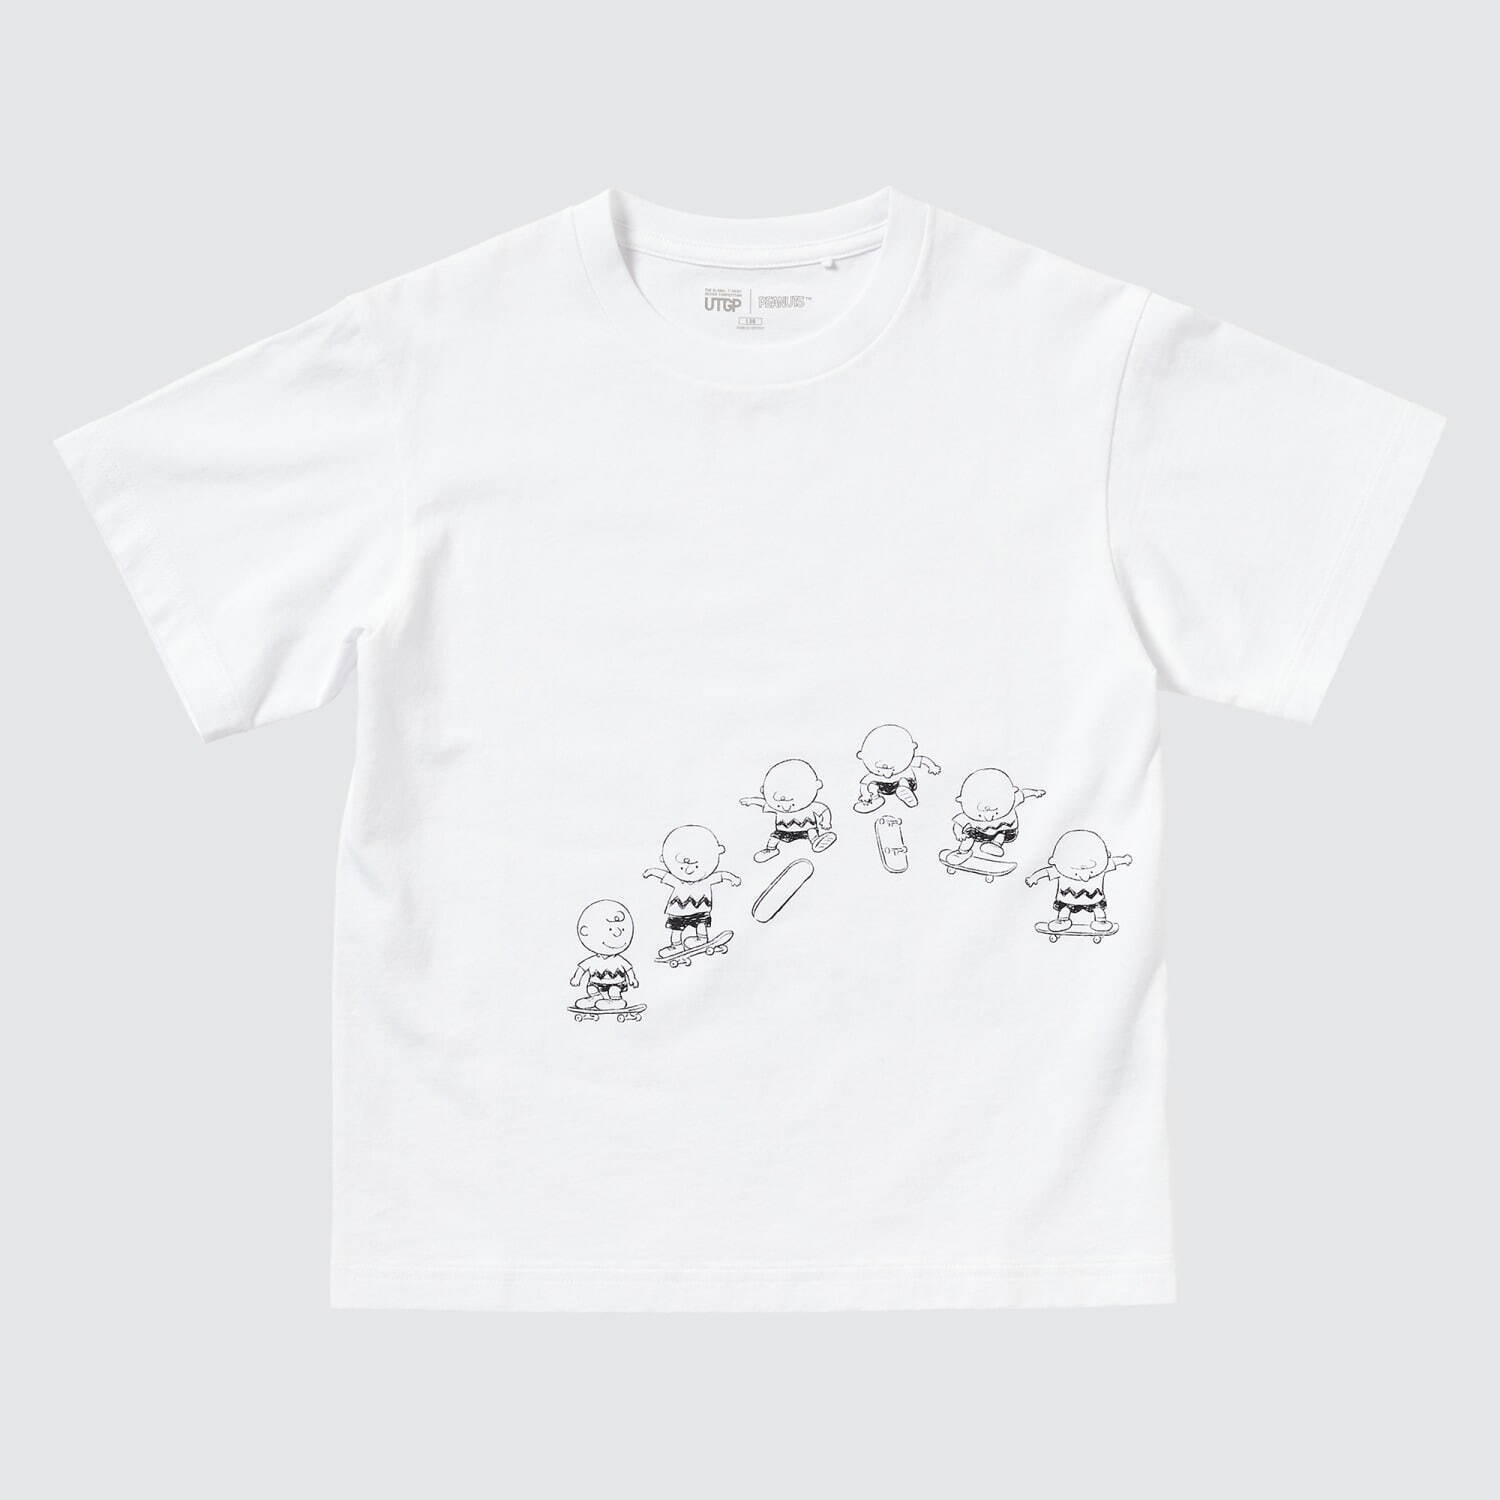 ユニクロ Ut スヌーピーと仲間たちを描いた新作tシャツ ピーナッツ テーマのコンペ受賞作を商品化 ファッションプレス